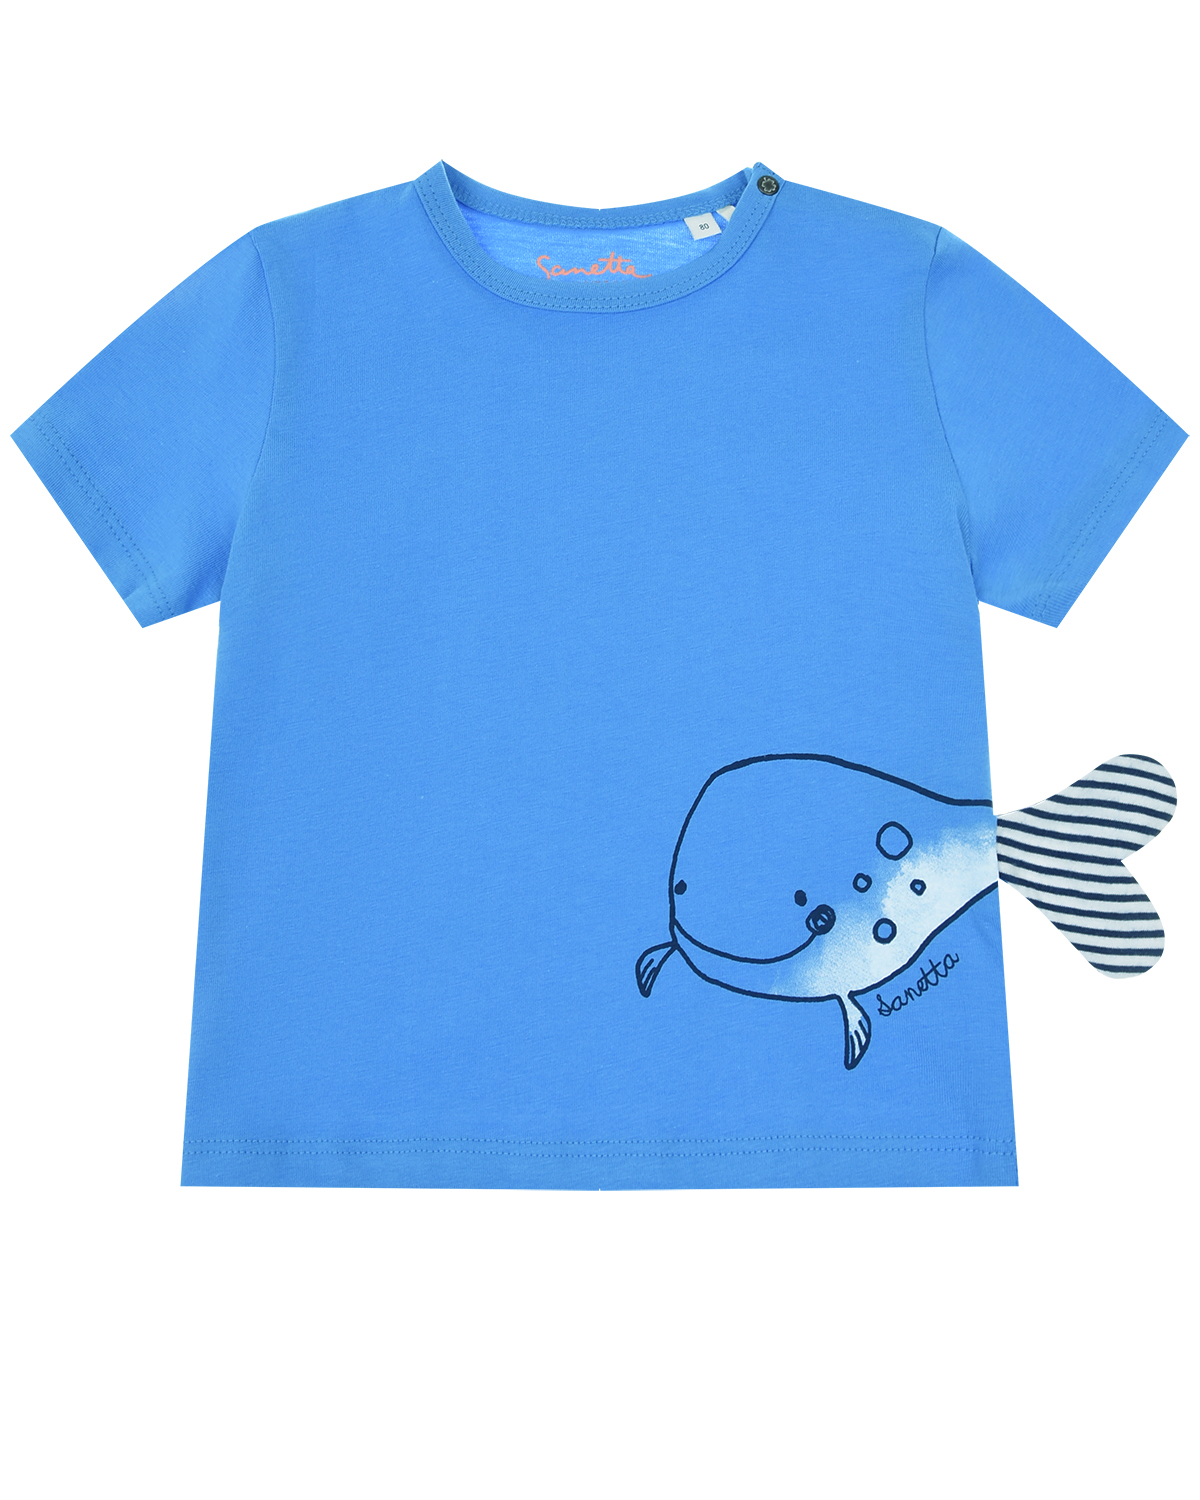 Синяя футболка с принтом "Кит" Sanetta Kidswear детская - фото 1